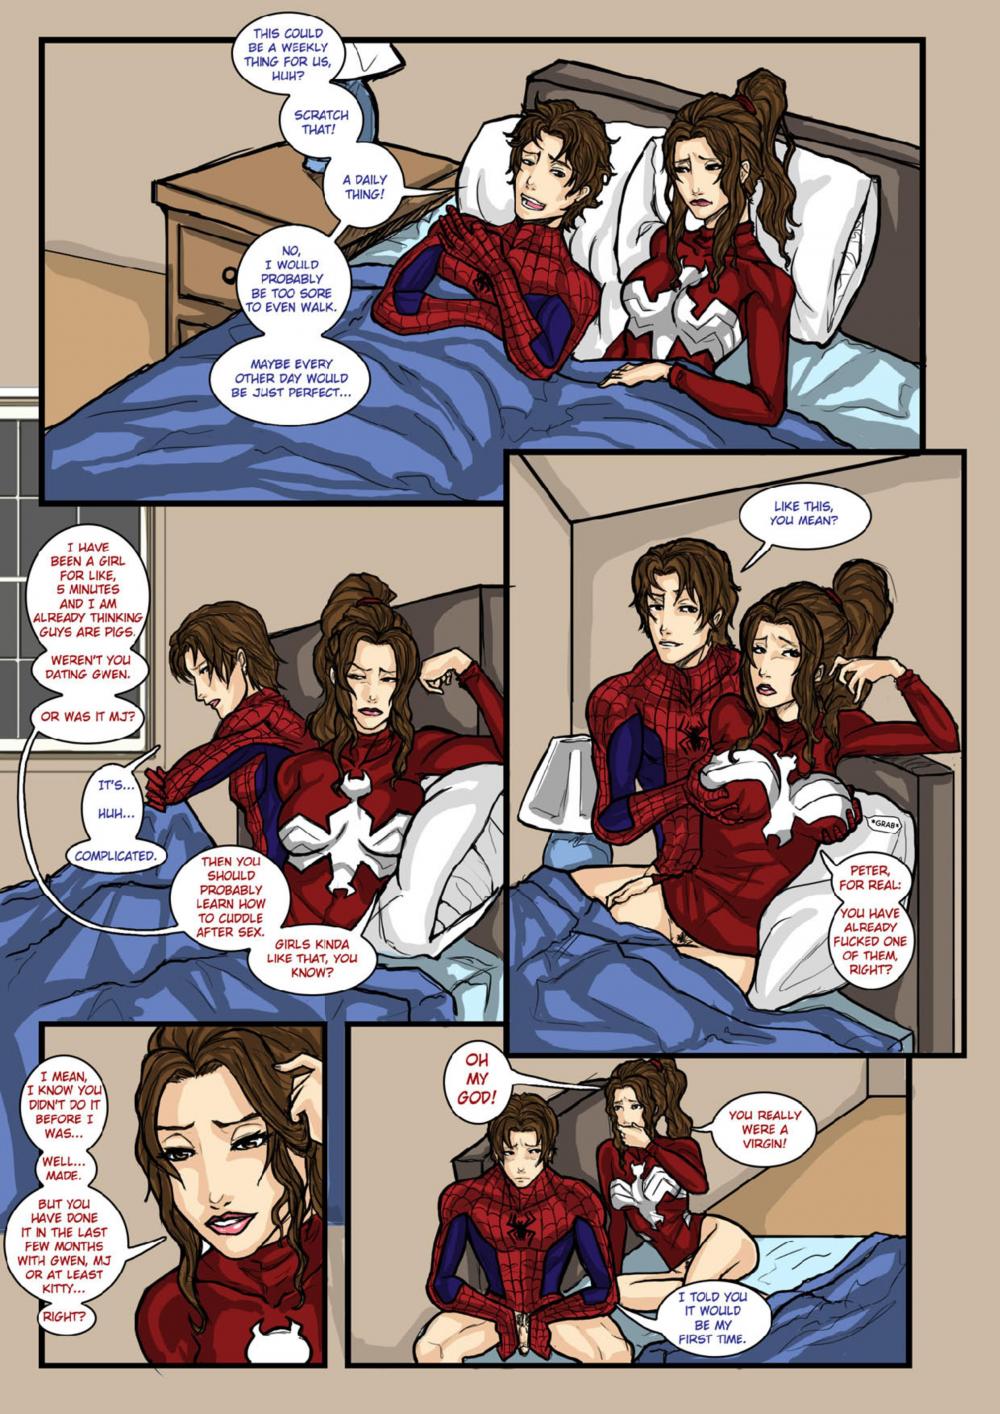 Ultimate Spider-Man XXX 4 - Spidercest - warm kitty, soft kitty - Page 3 -  HentaiRox